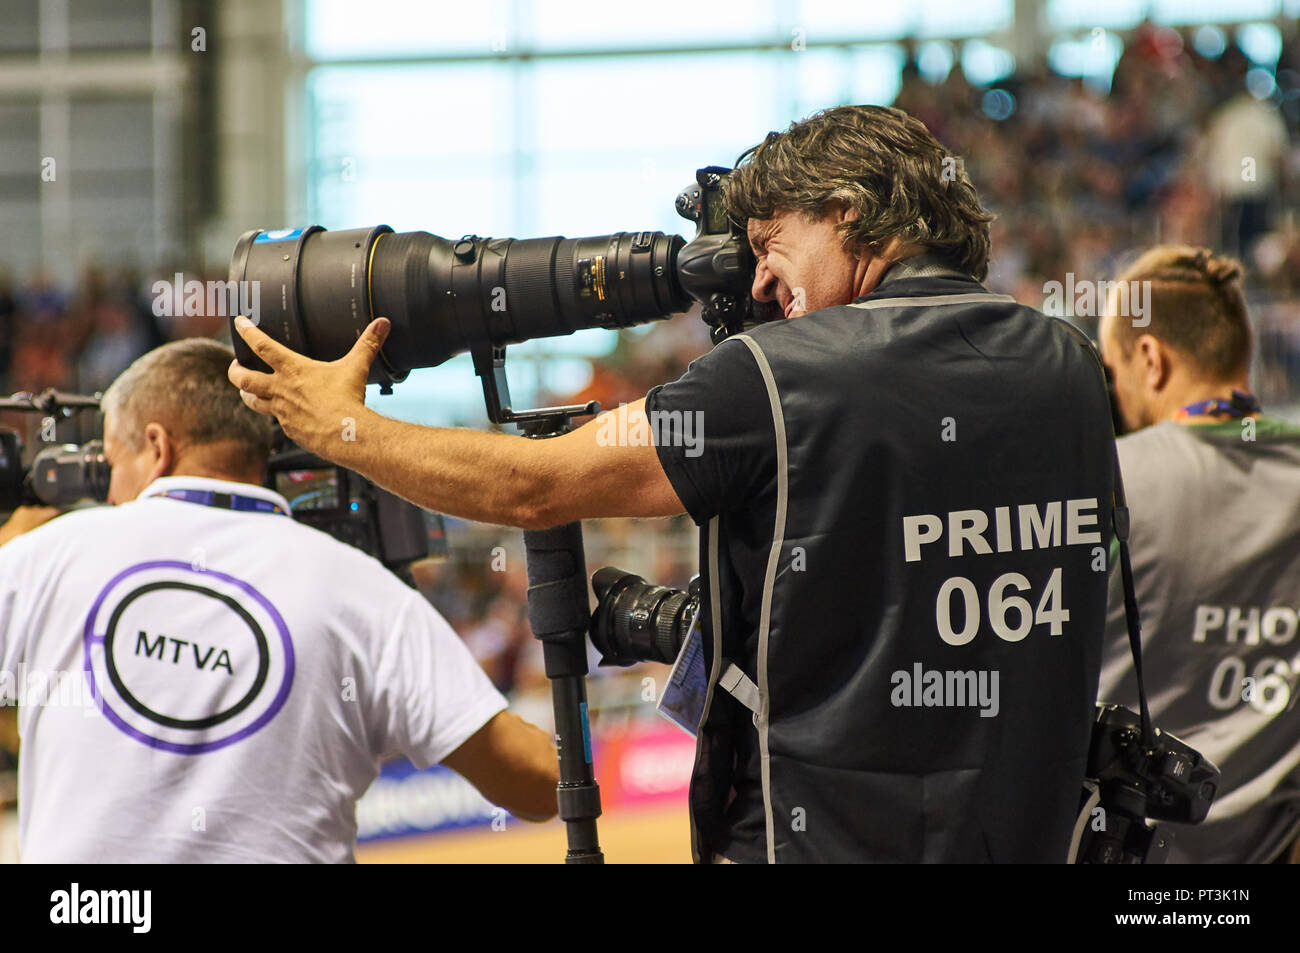 Premere il fotografo a fotografare la gara su pista utilizzando una Nikon teleobiettivo durante i Campionati Europei di Glasgow in 2018. Foto Stock